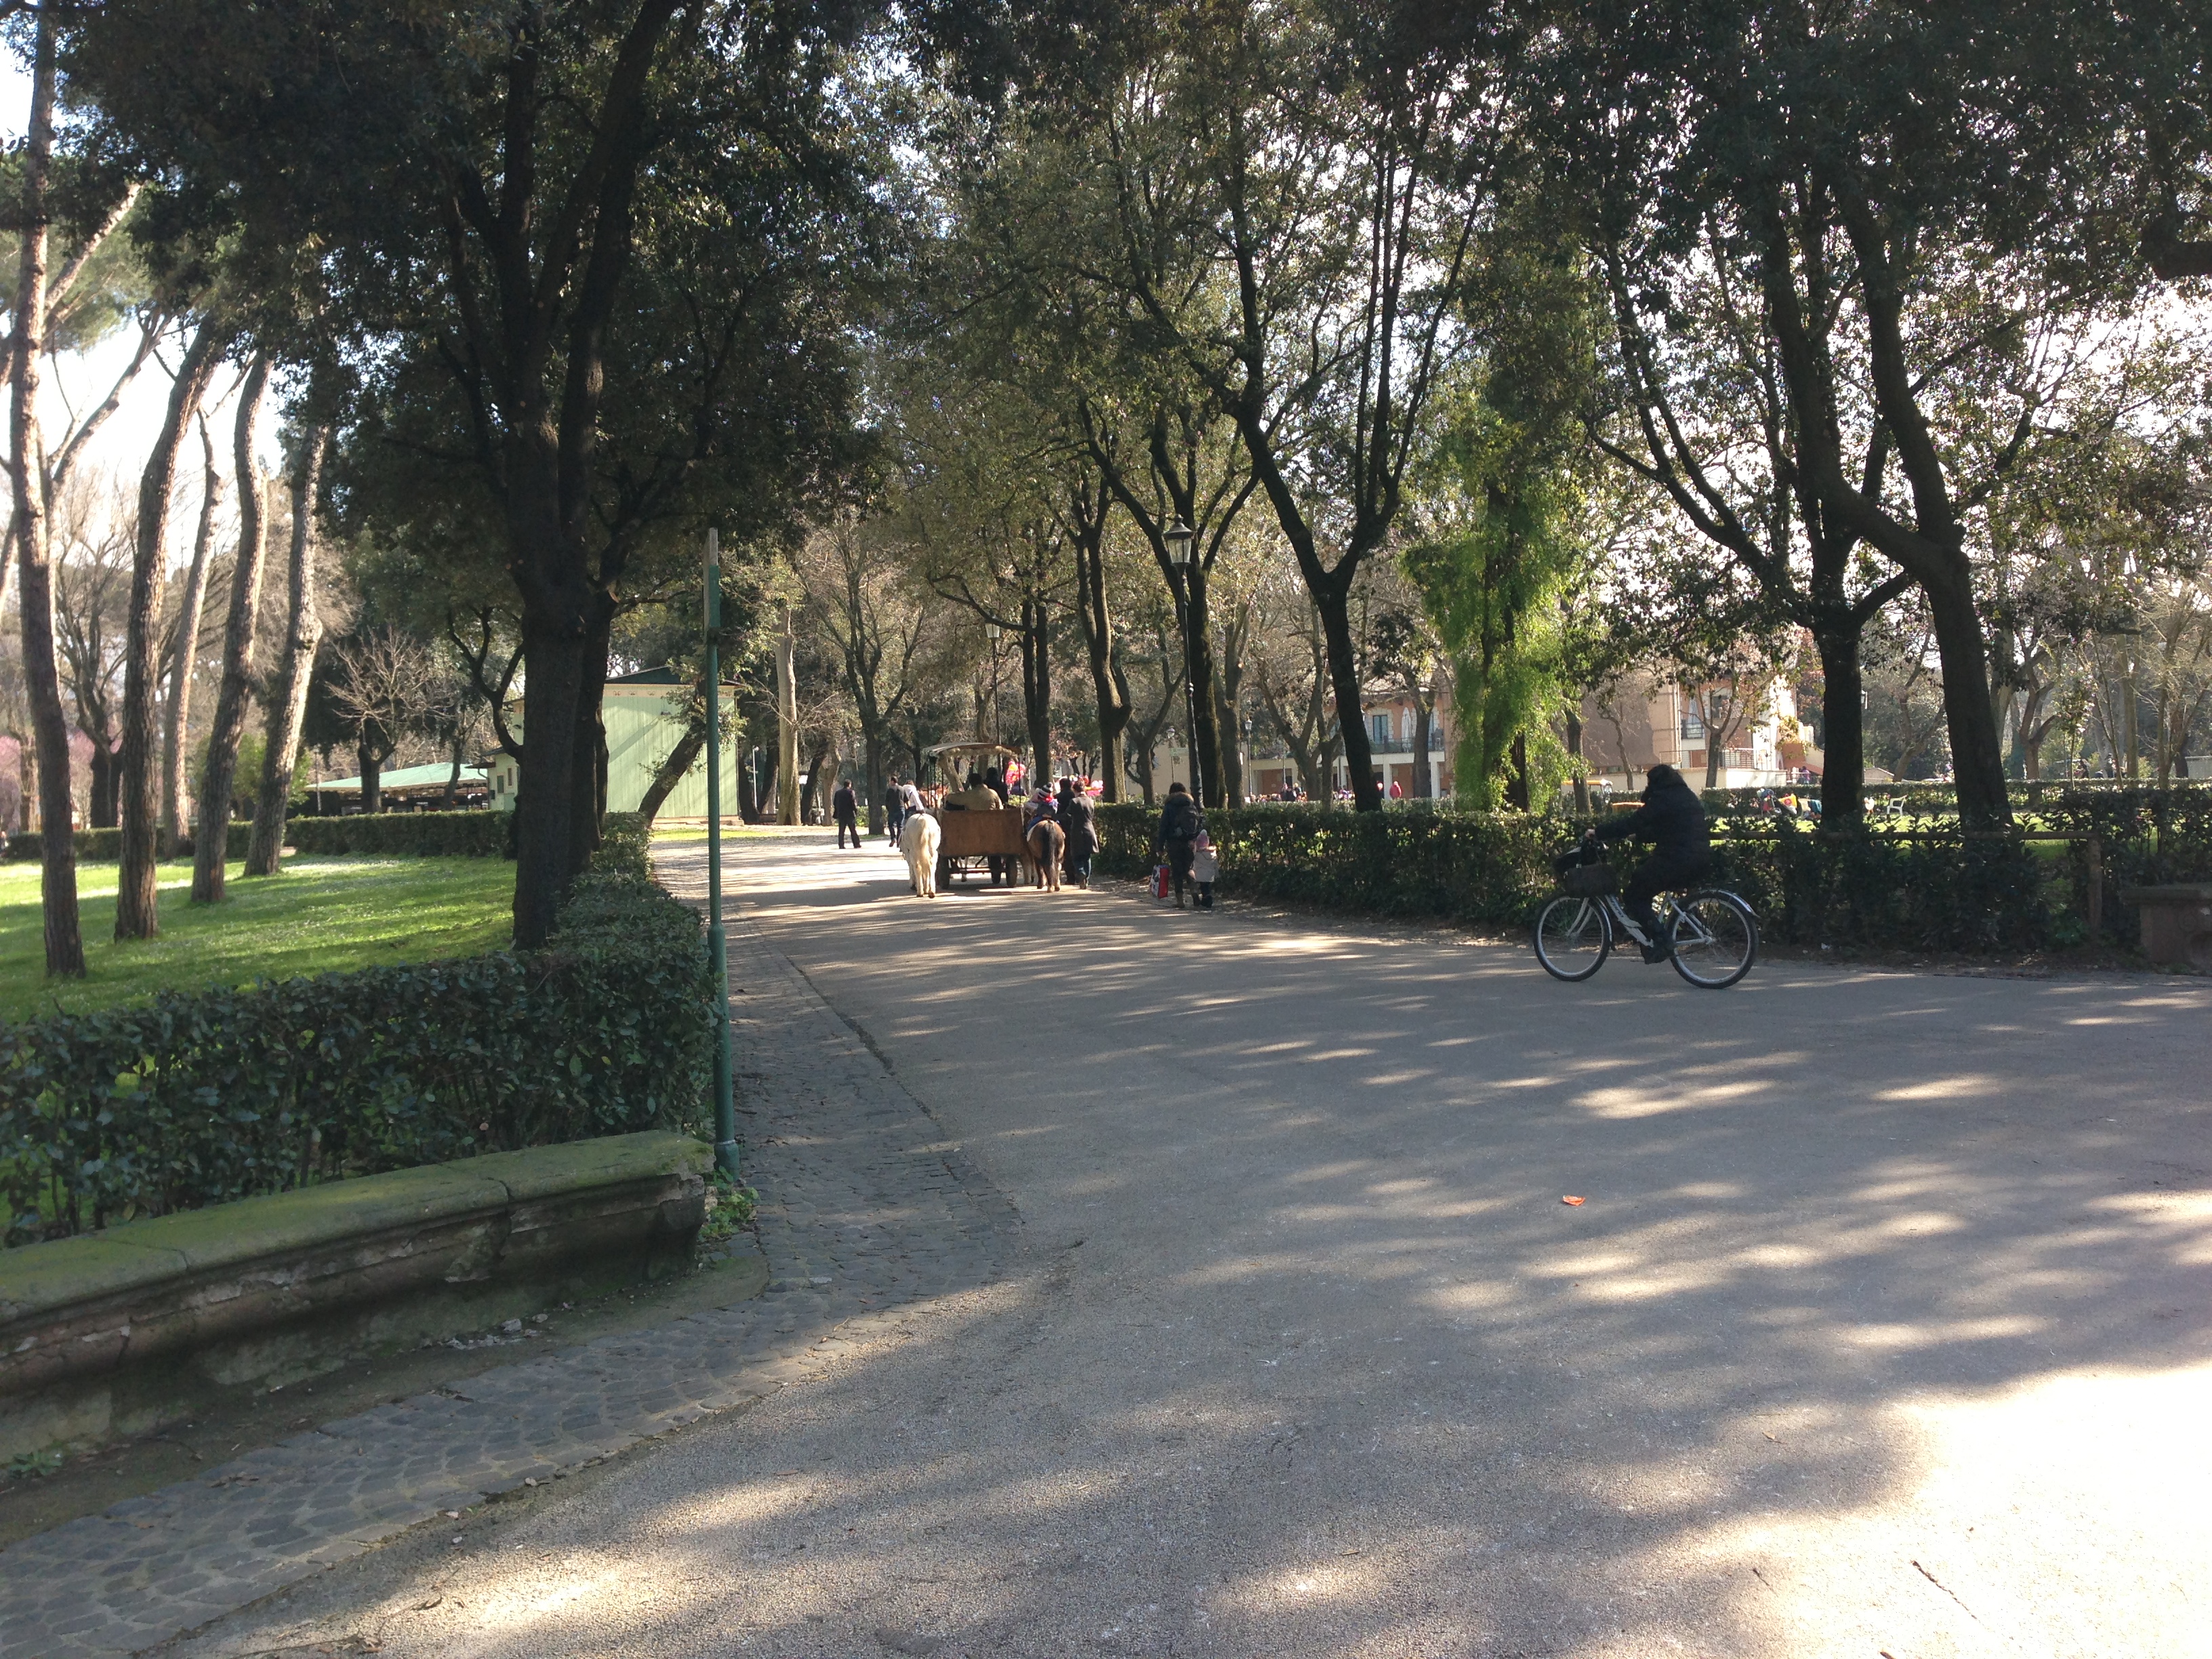 Borghese-parken var enorm, og mange fant tydeligvis veien dit for rekreasjon i helgene.